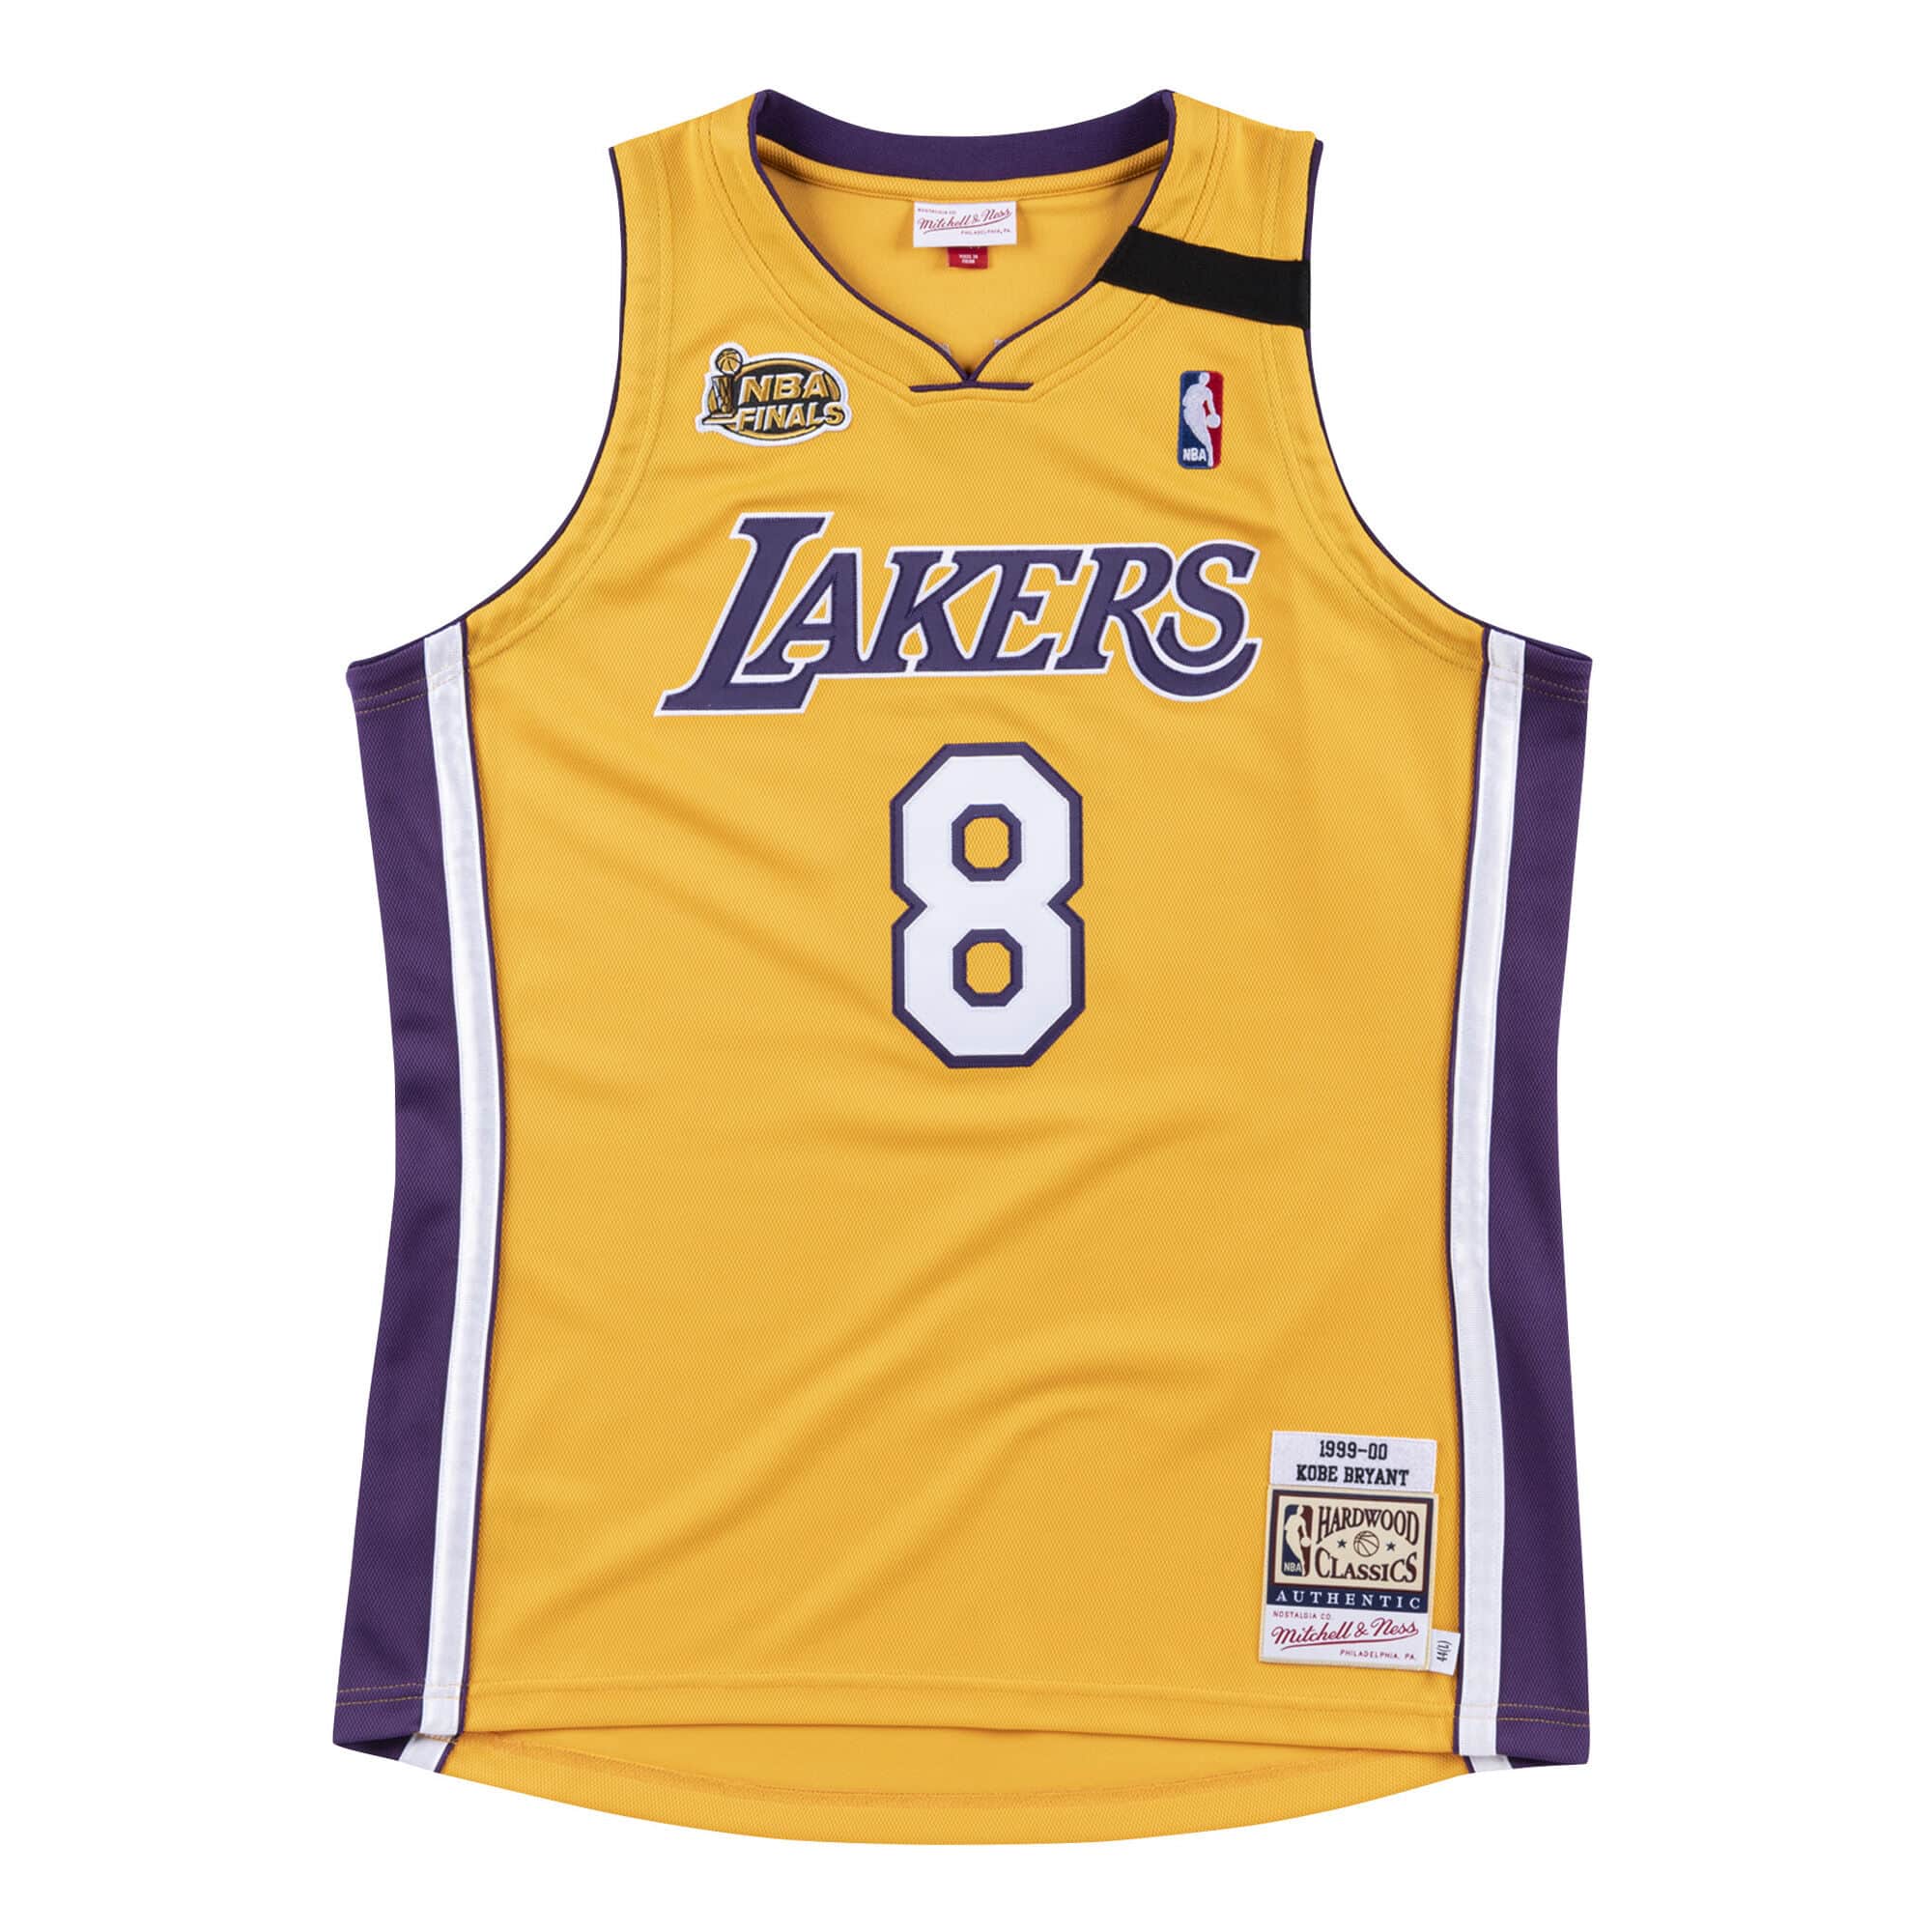 Buy NBA Men's Los Angeles Lakers Kobe Bryant Originals